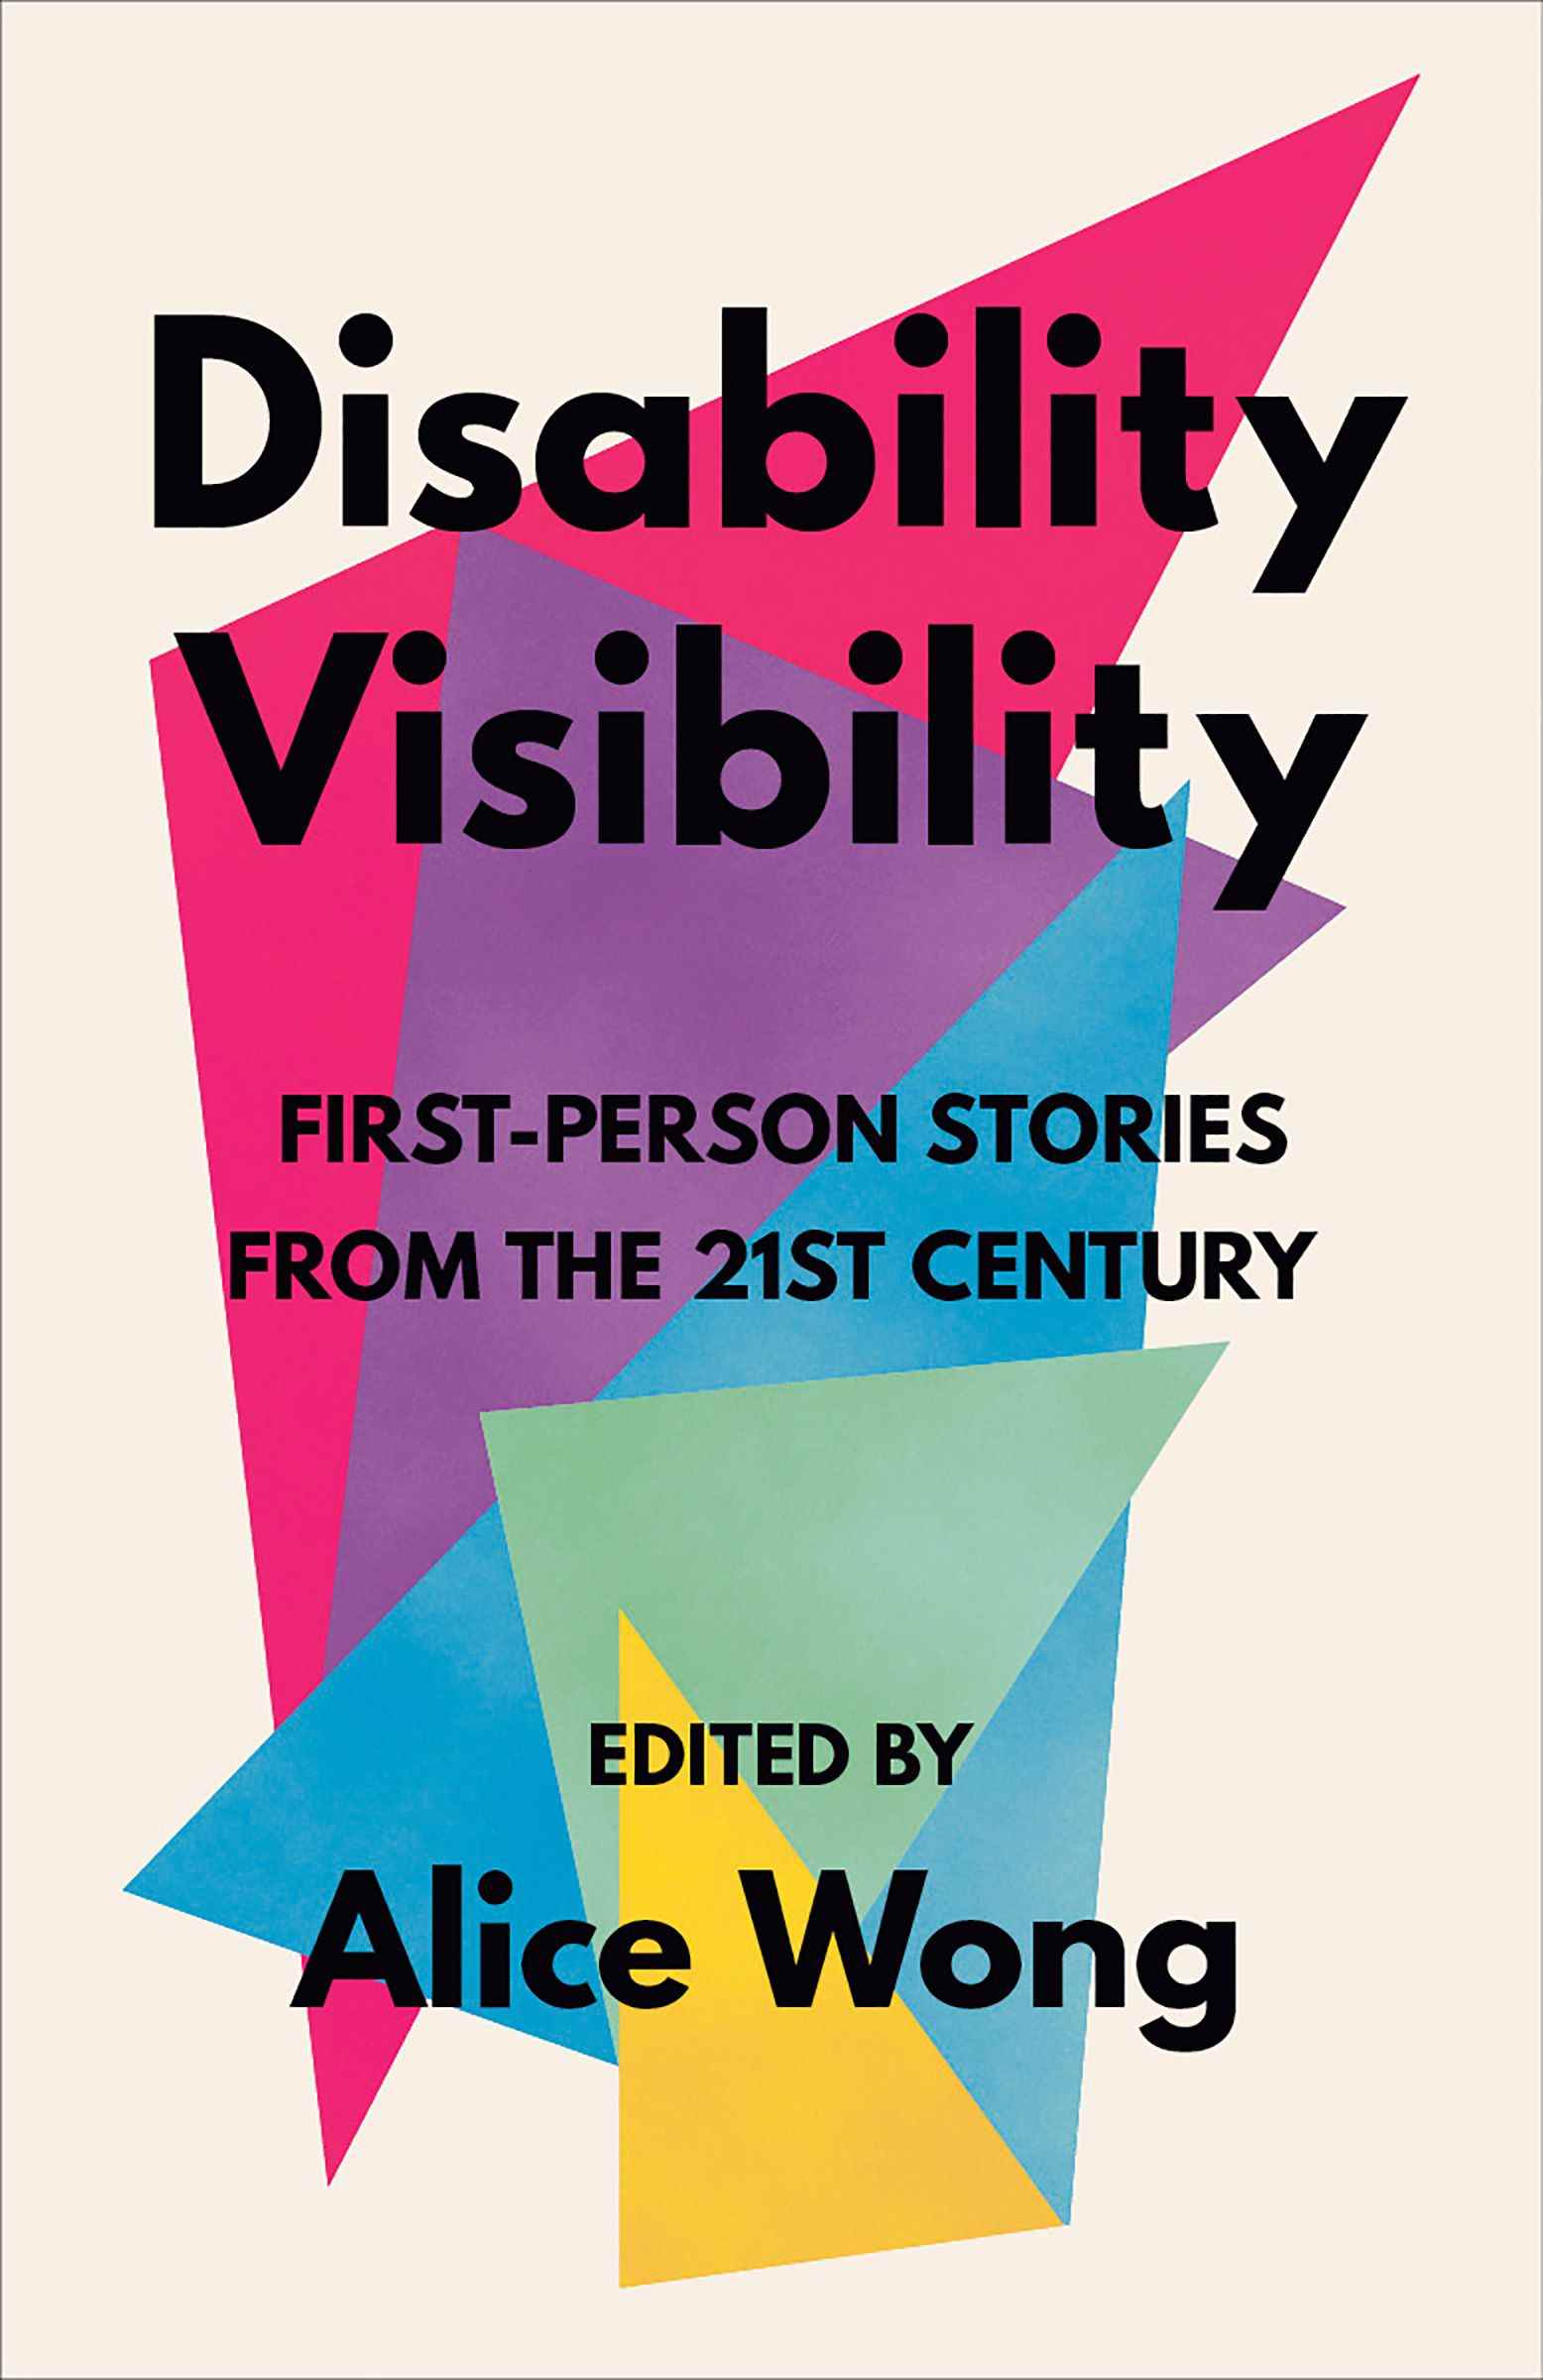 couverture du livre de visibilité handicap